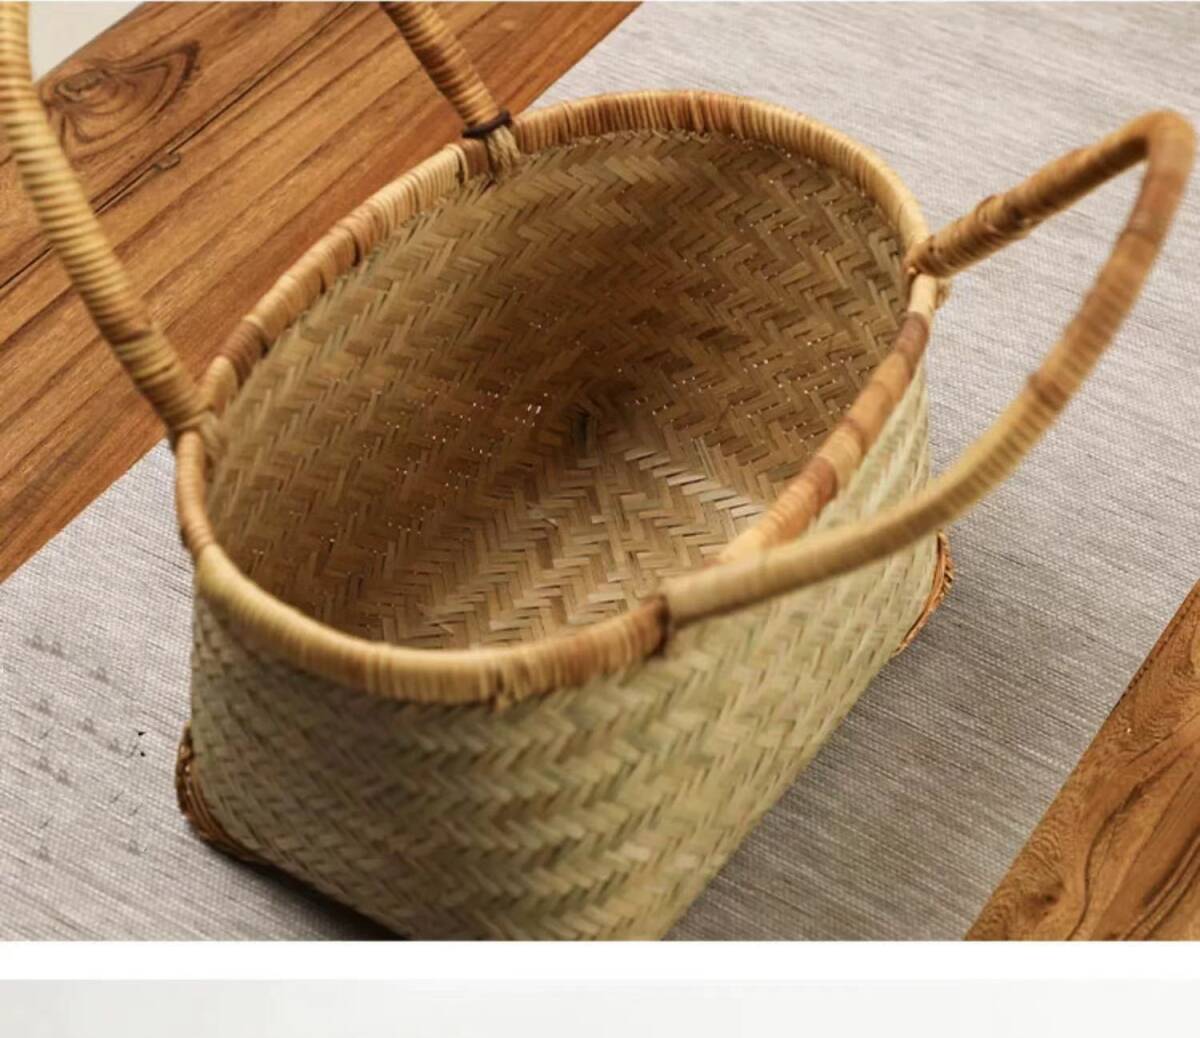  bamboo braided up basket back handmade basket stylish shopping basket storage bag 